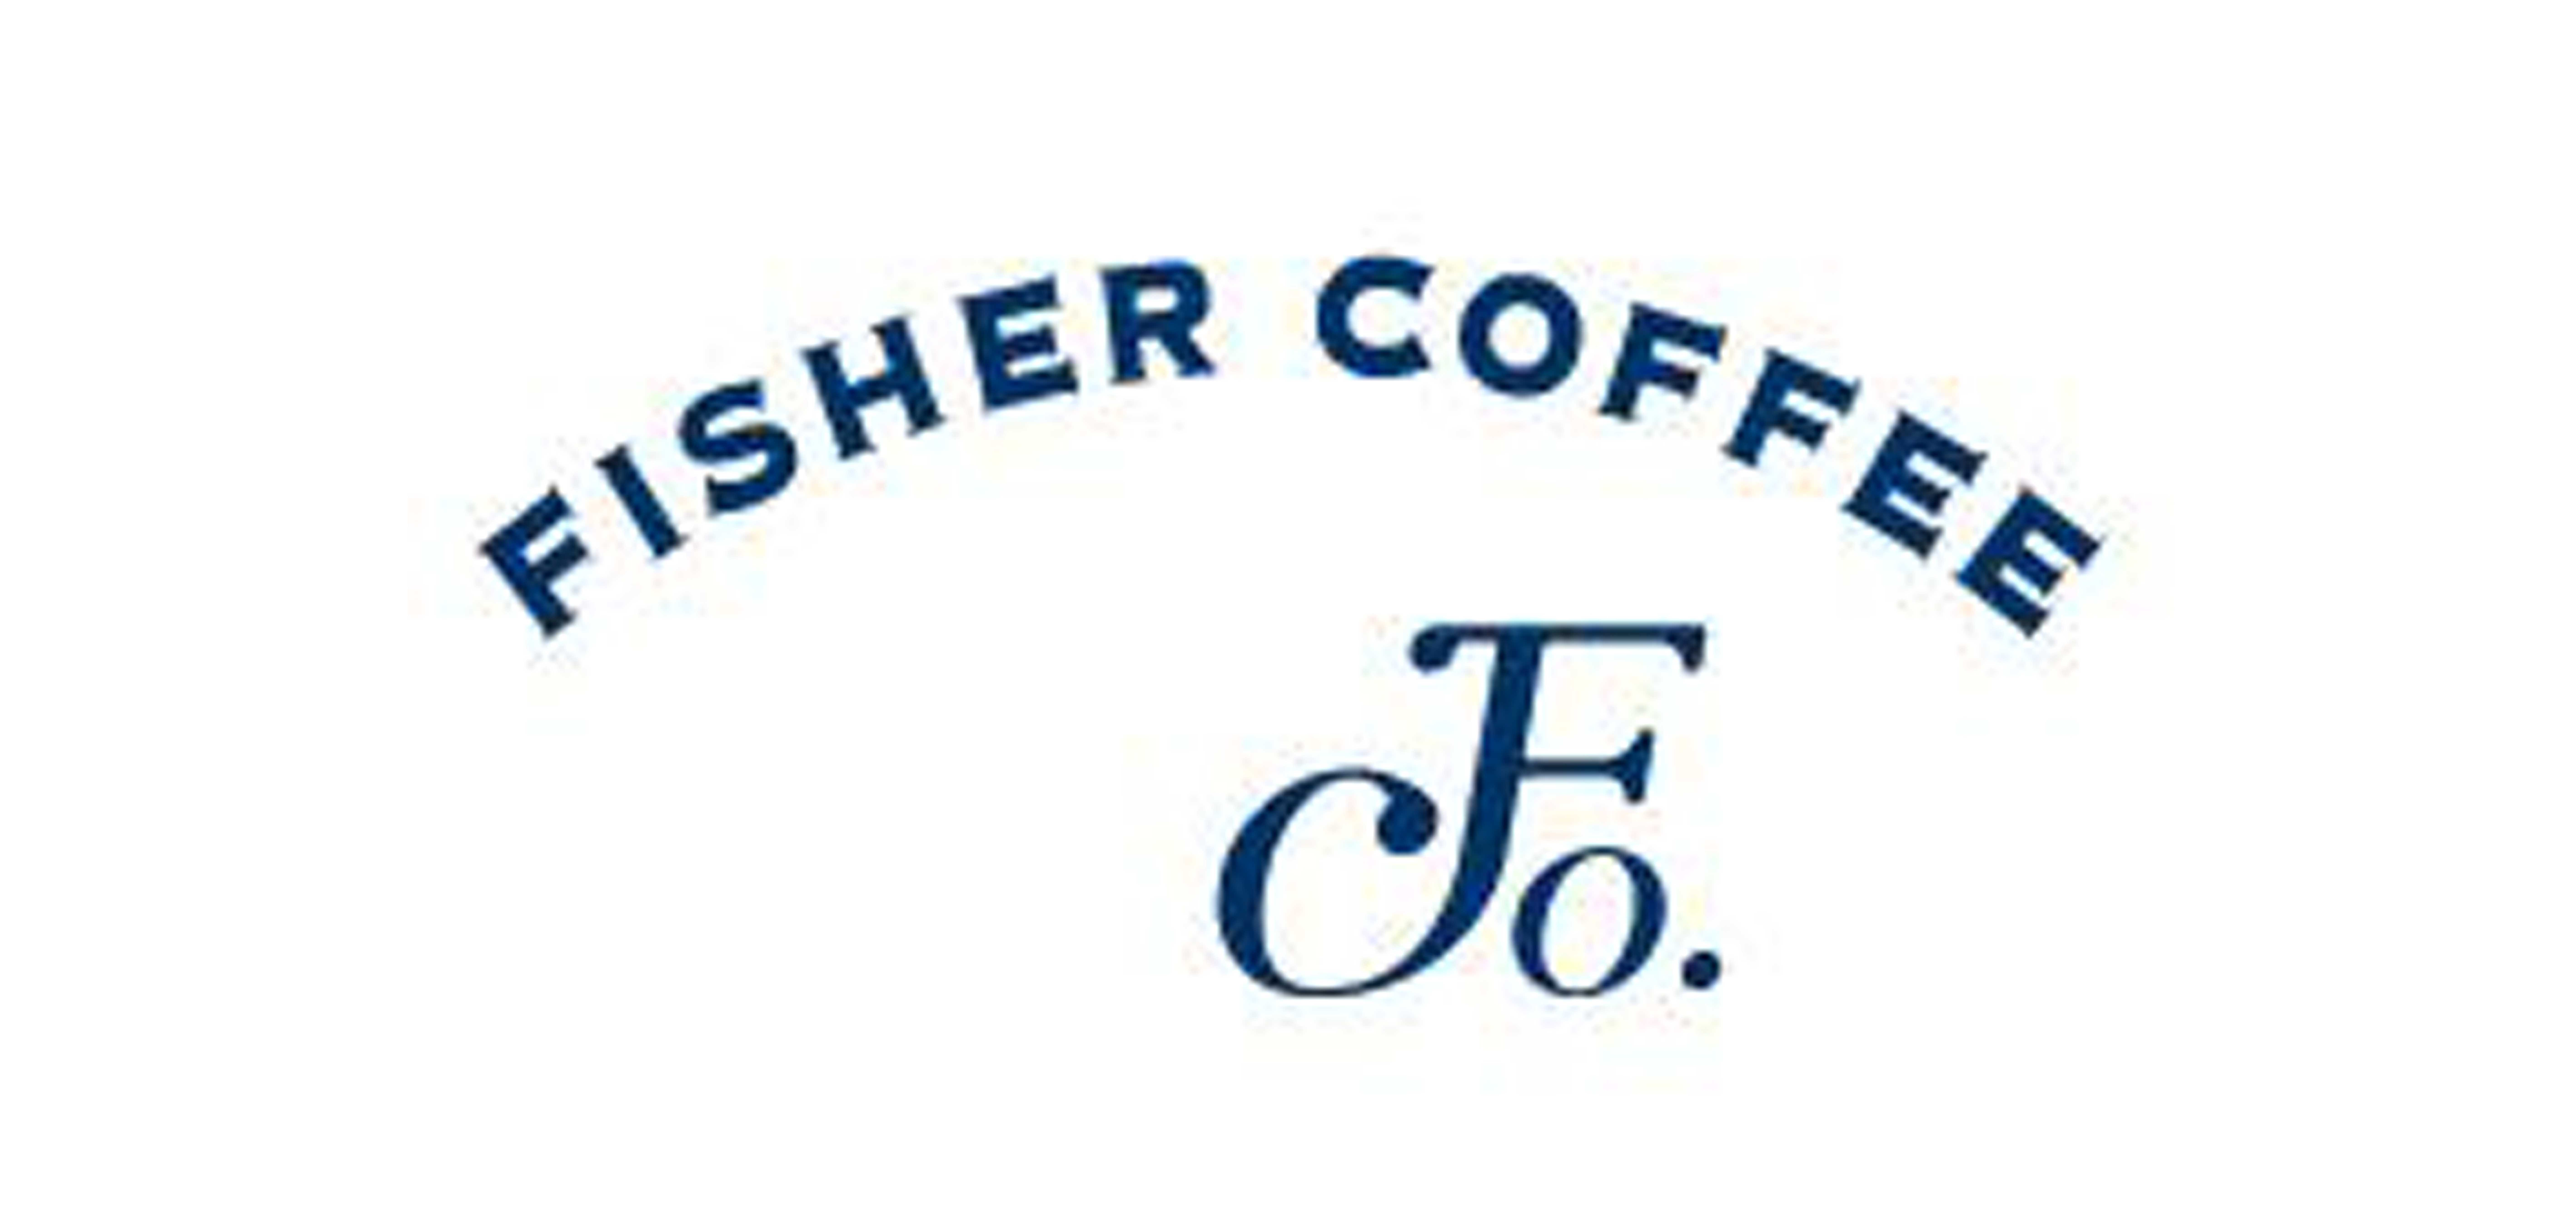 啡舍咖啡/fishercoffee